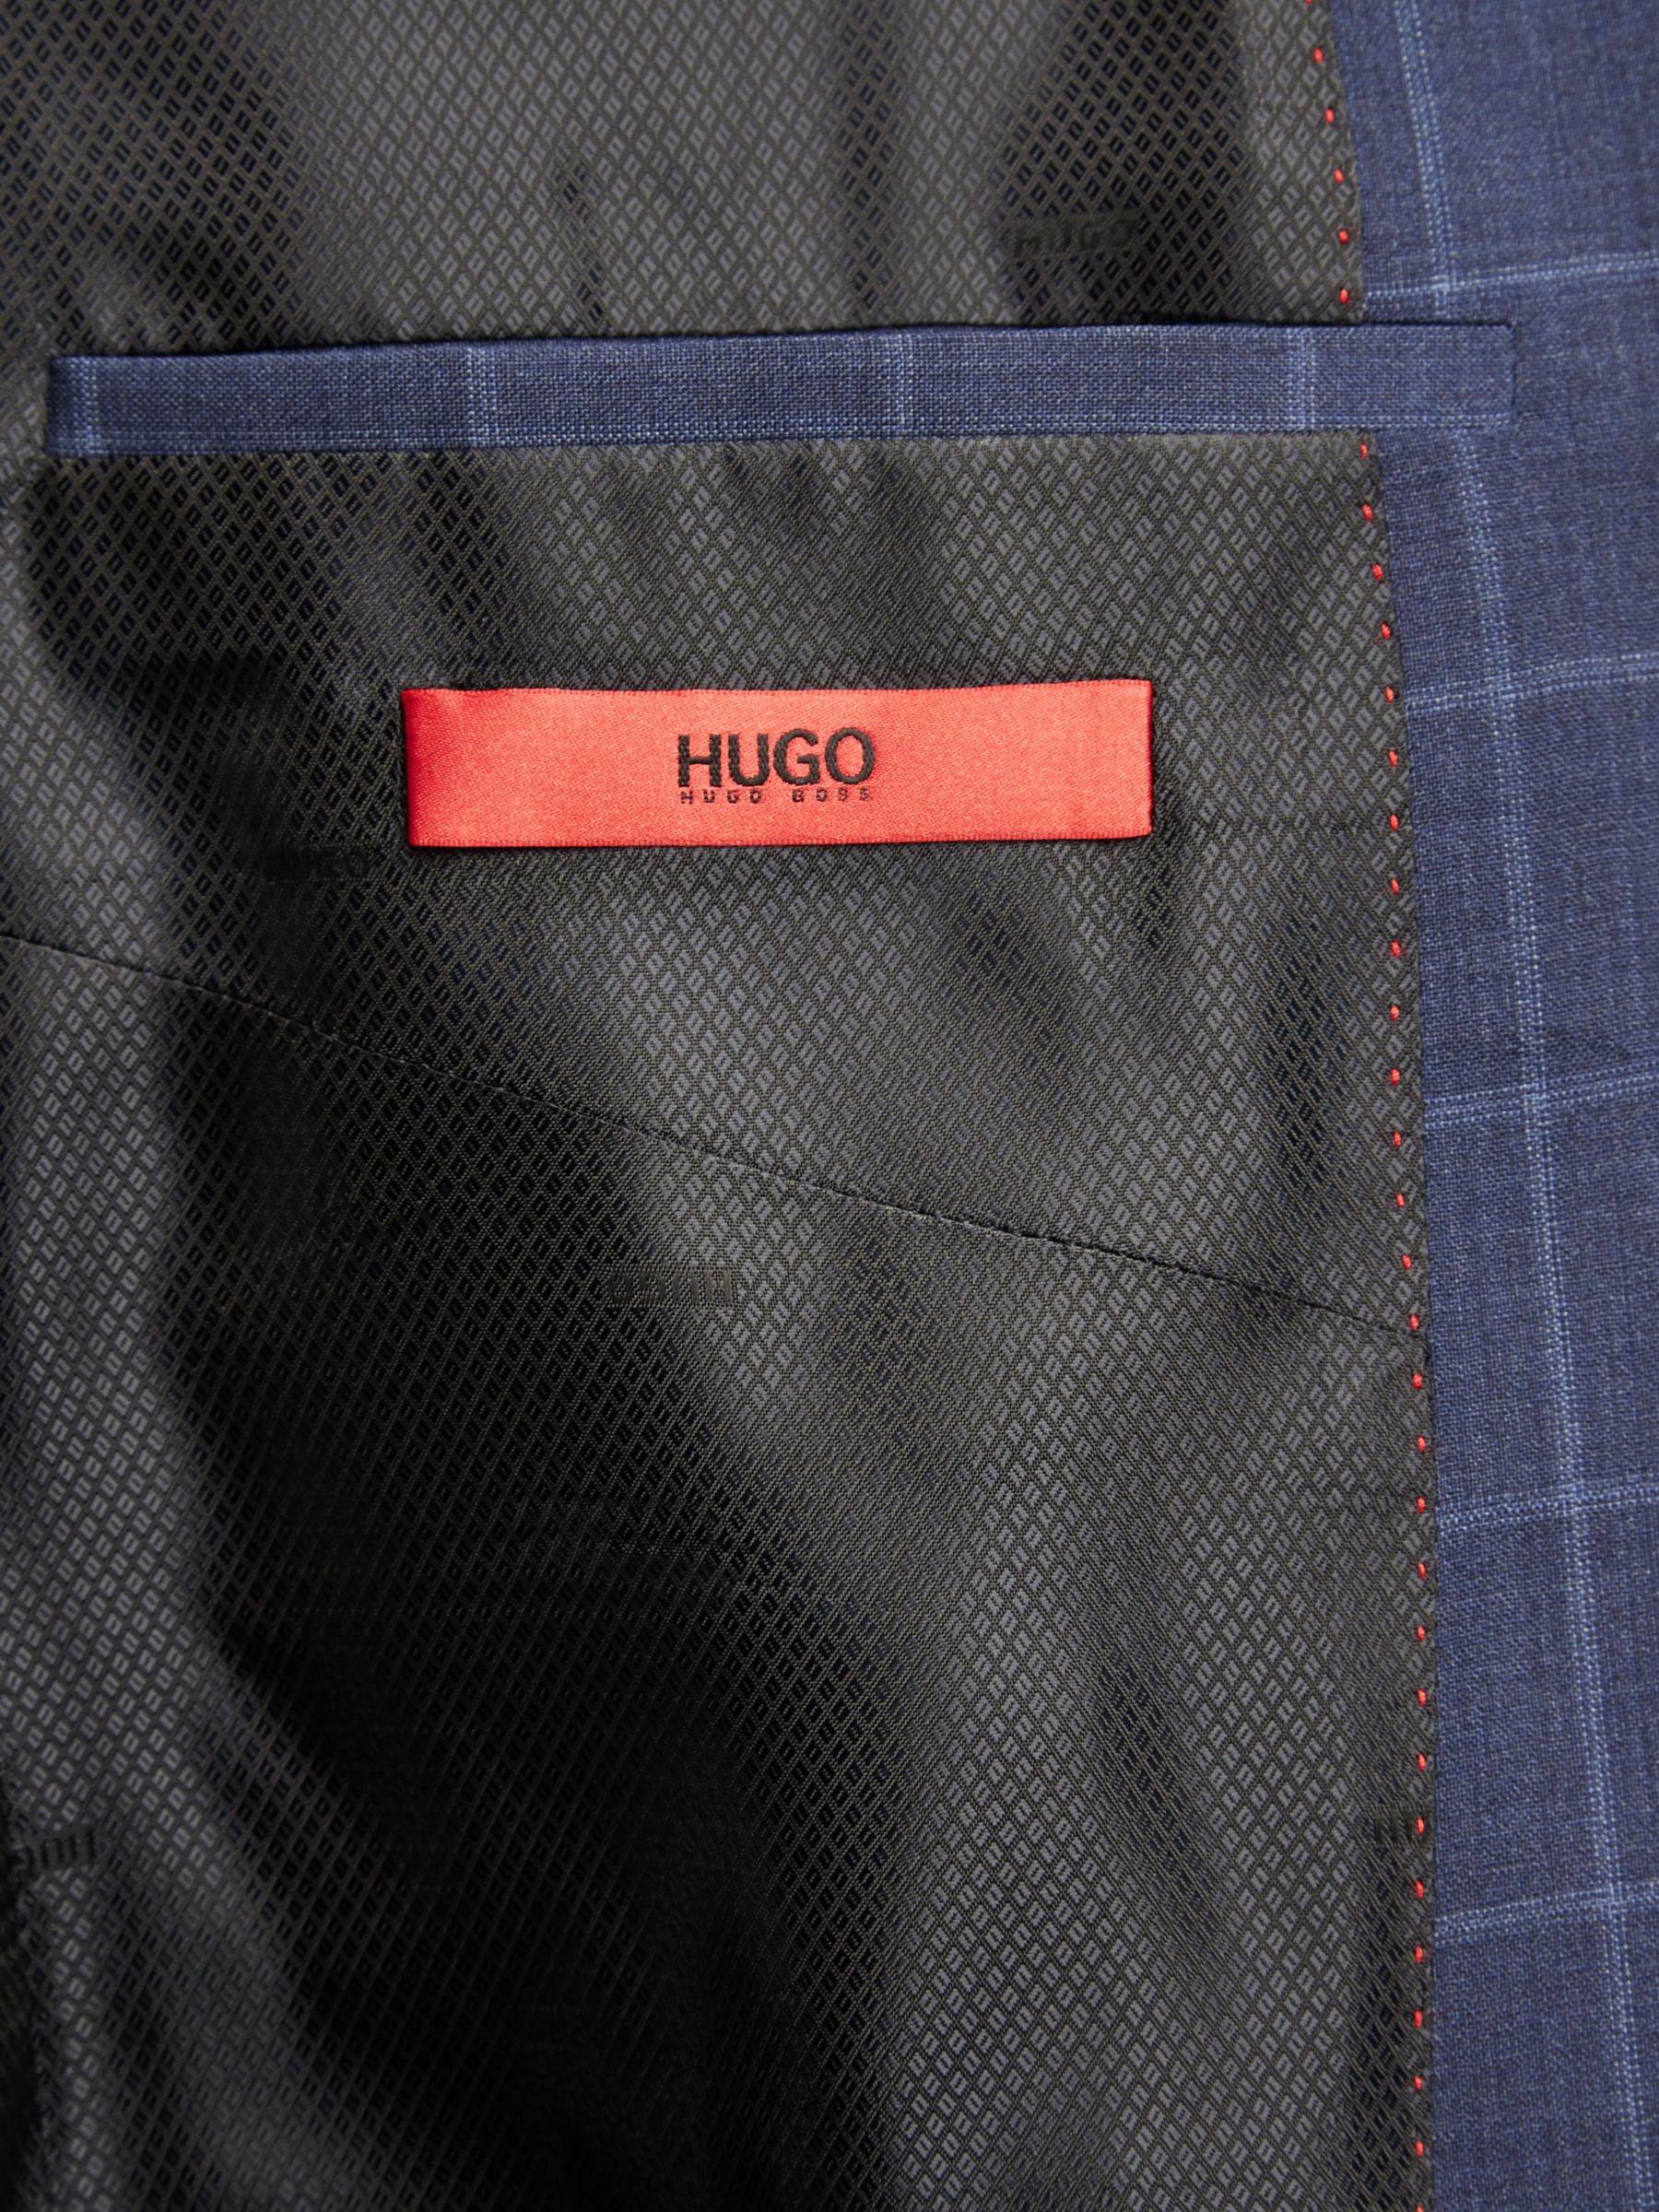 HUGO by Hugo Boss Henry Windowpane Check Virgin Wool Slim Fit Suit ...